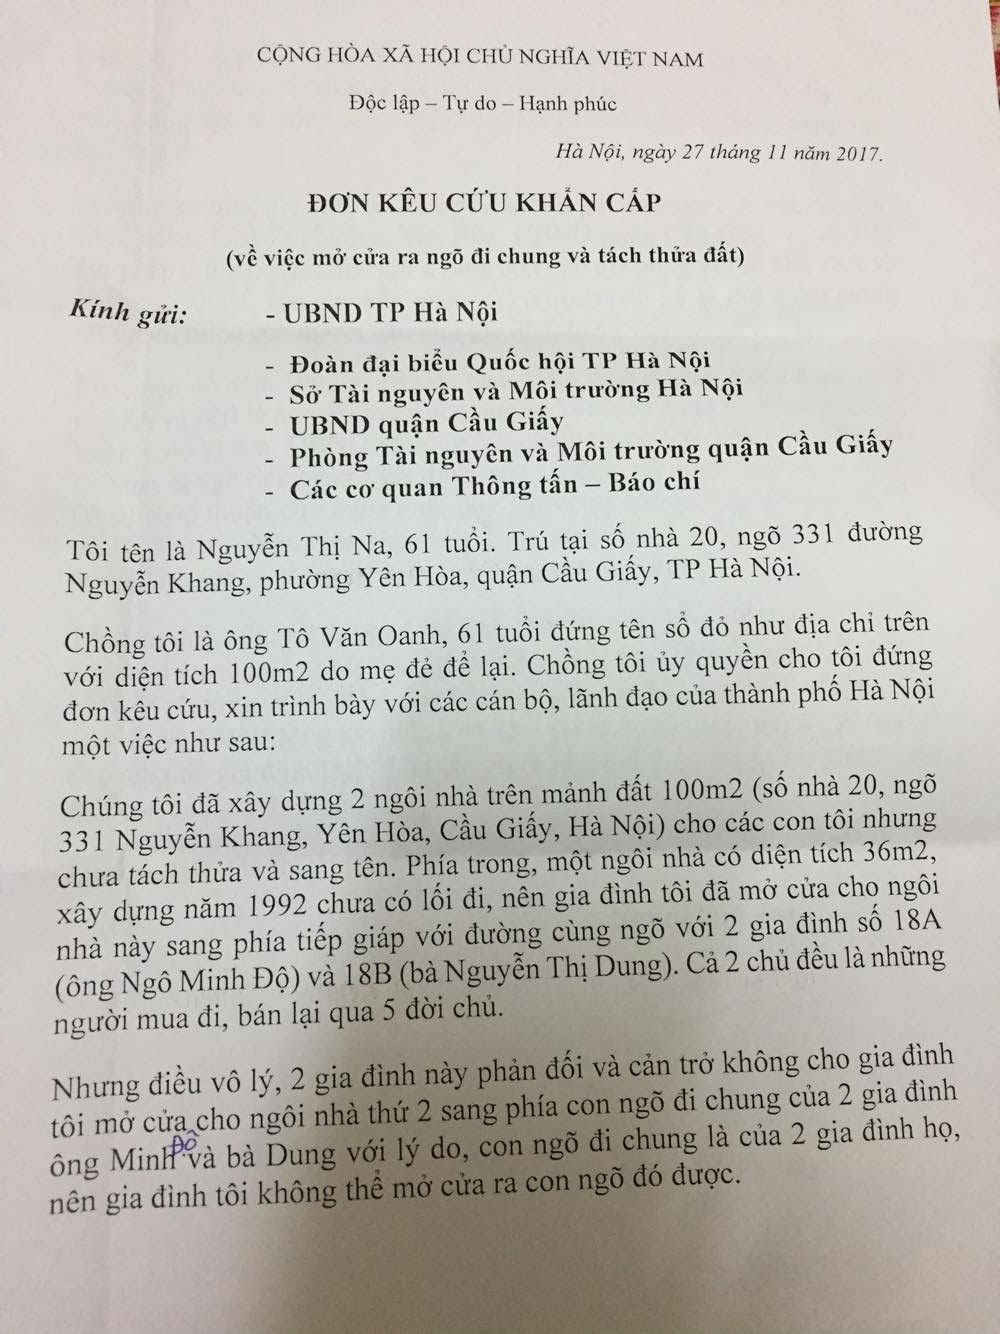 Đơn kêu cứu của bà Nguyễn Thị Na.